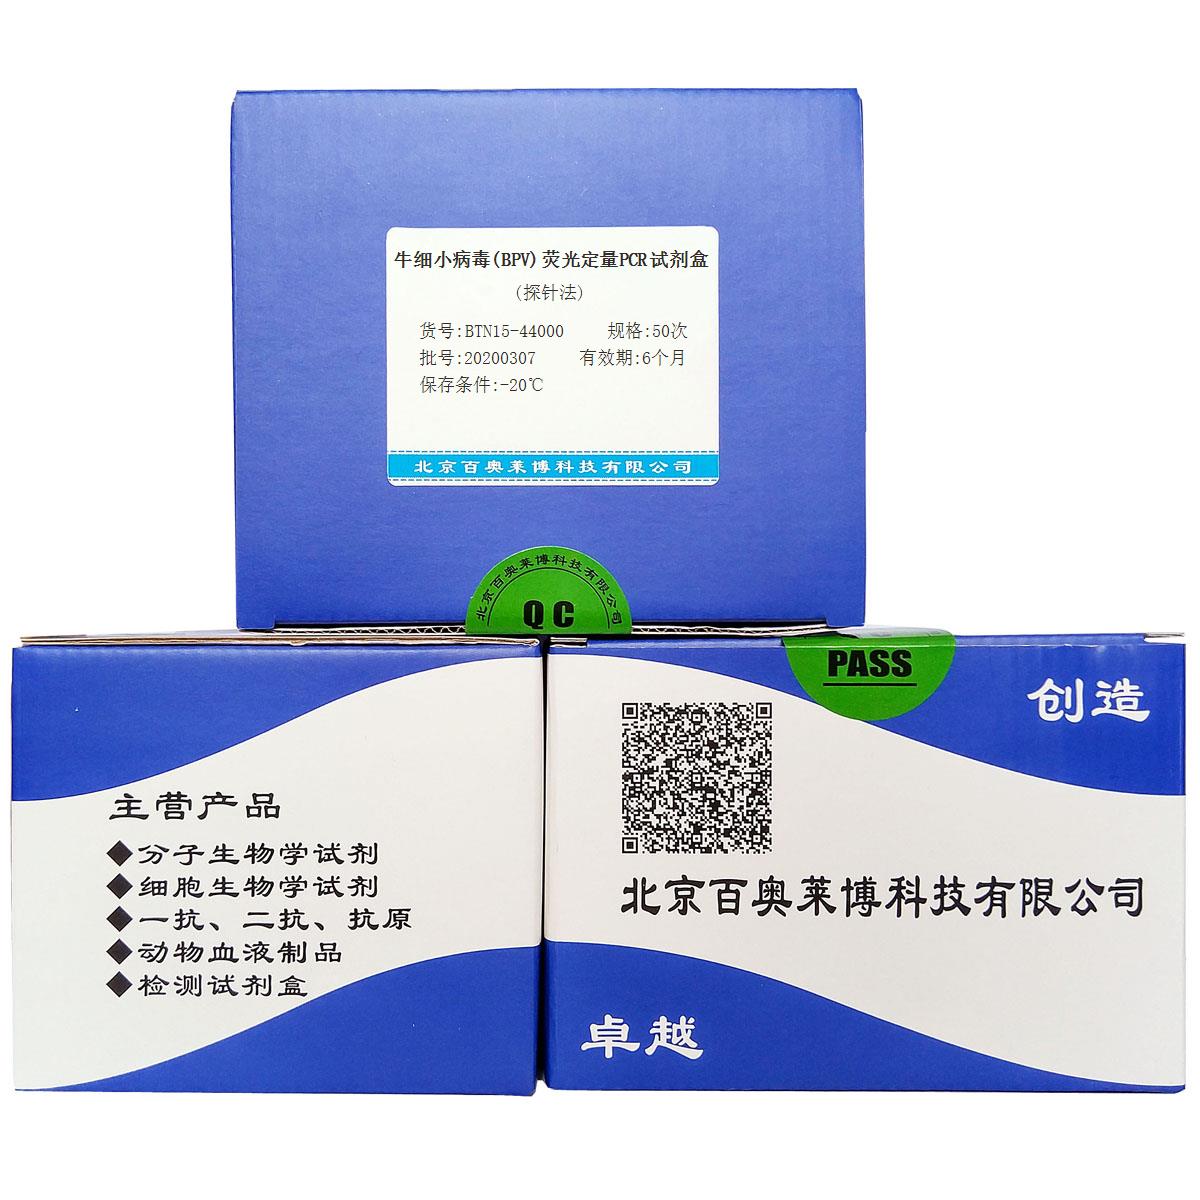 牛细小病毒(BPV)荧光定量PCR试剂盒(探针法)